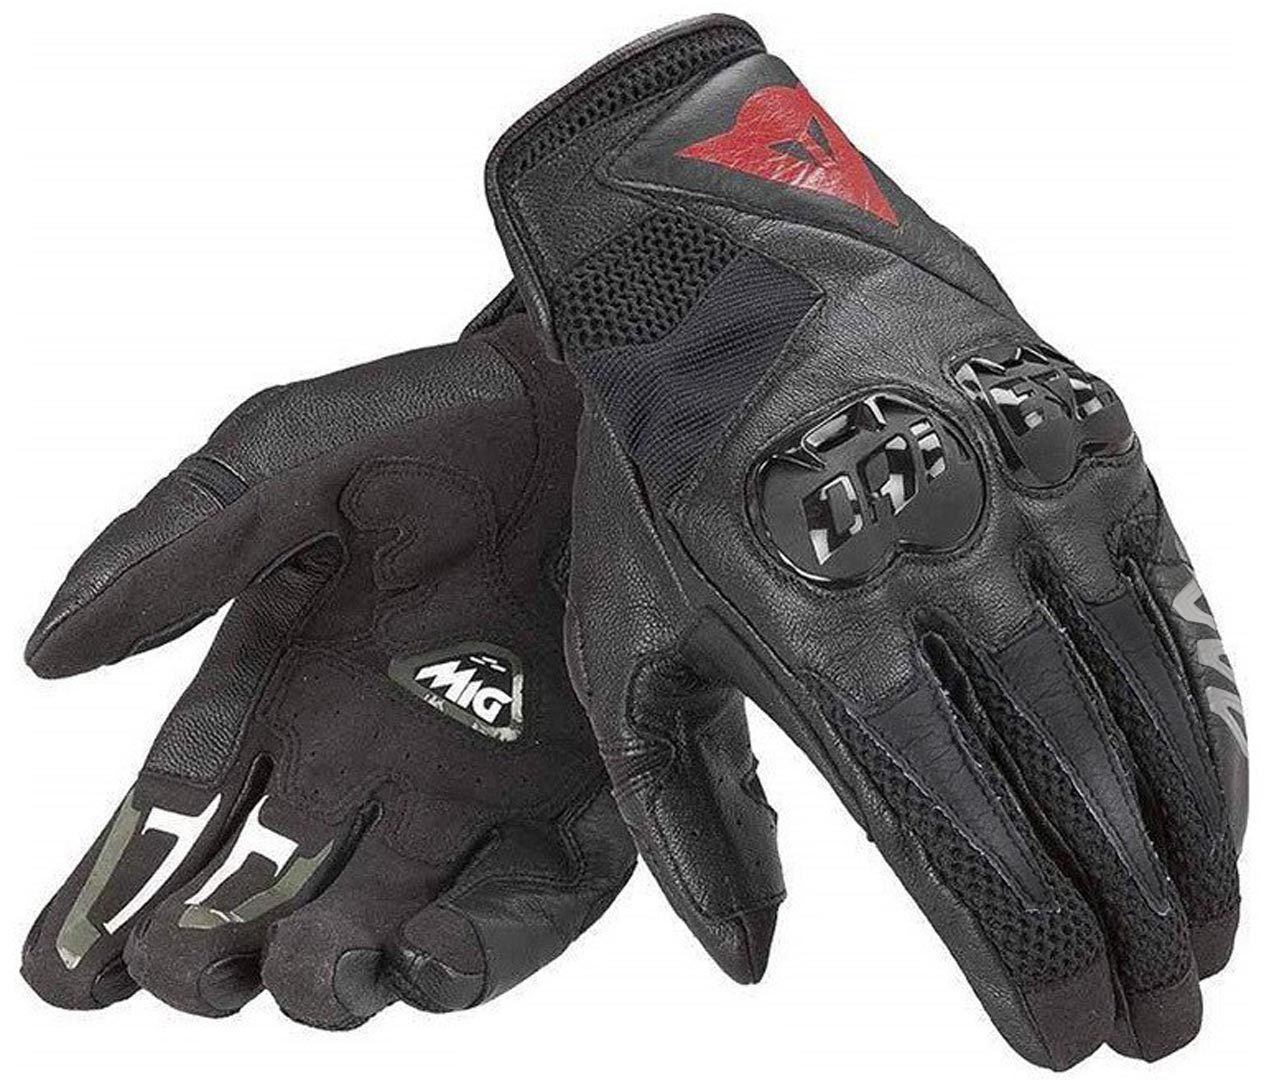 Dainese Mig C2 Motorfiets handschoenen, zwart, afmeting M